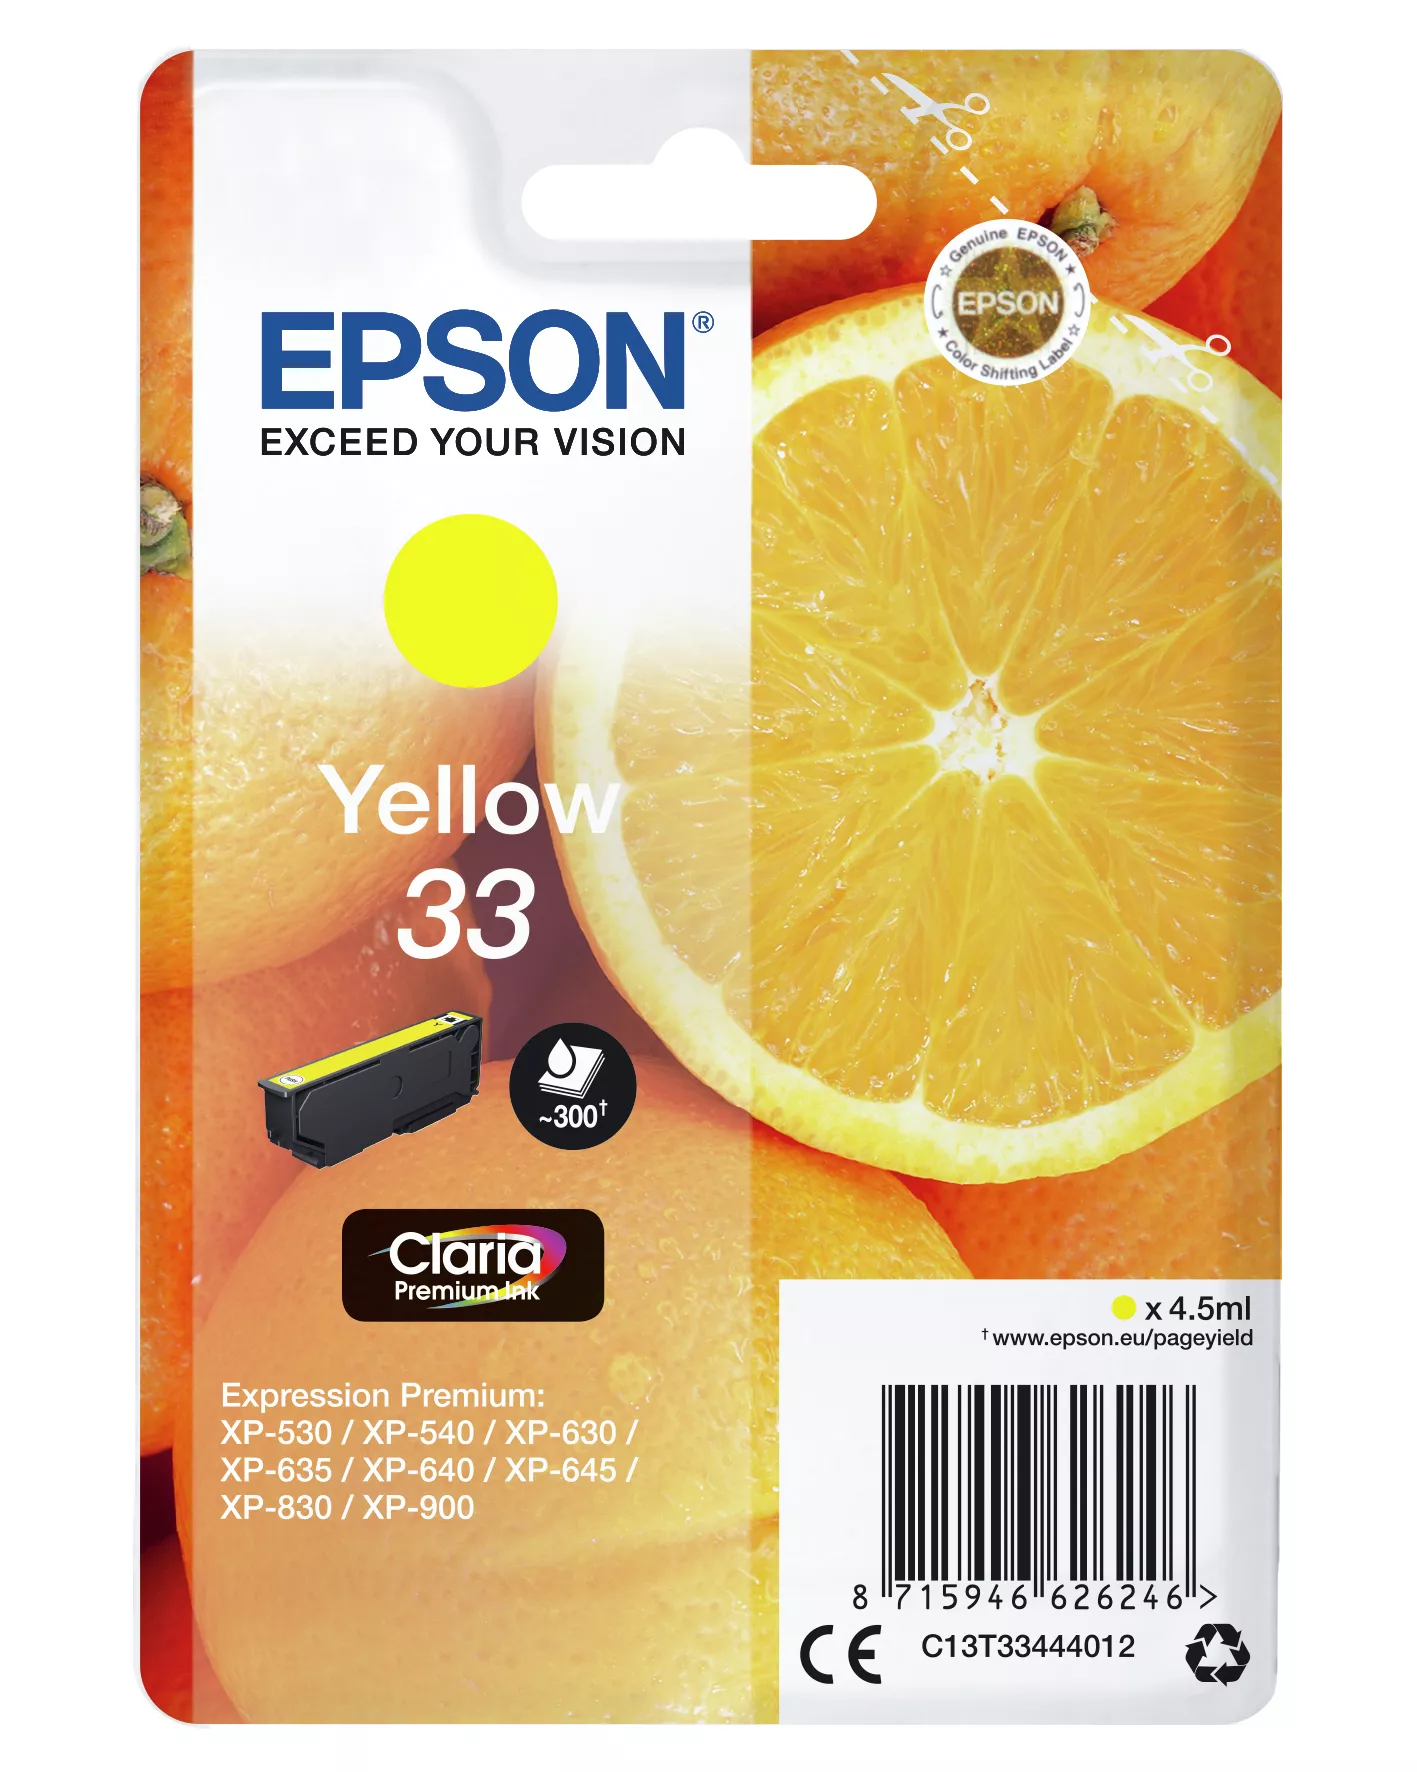 Achat EPSON Cartouche Oranges Encre Claria Premium Jaune sur hello RSE - visuel 3